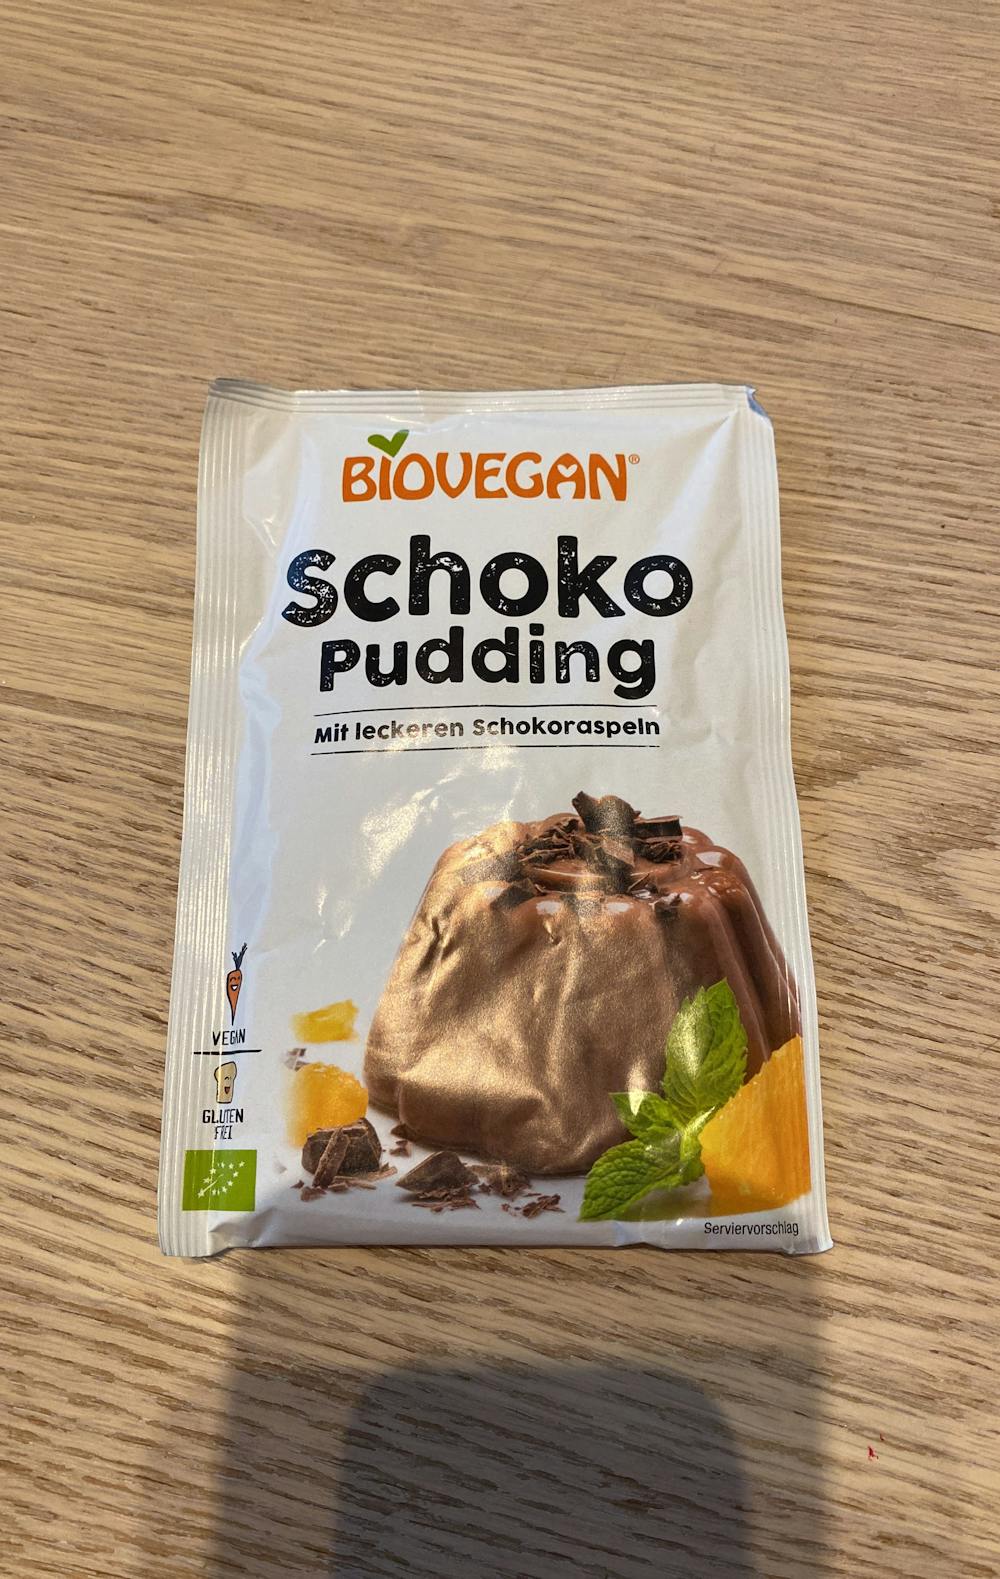 Schoko pudding, Biovegan